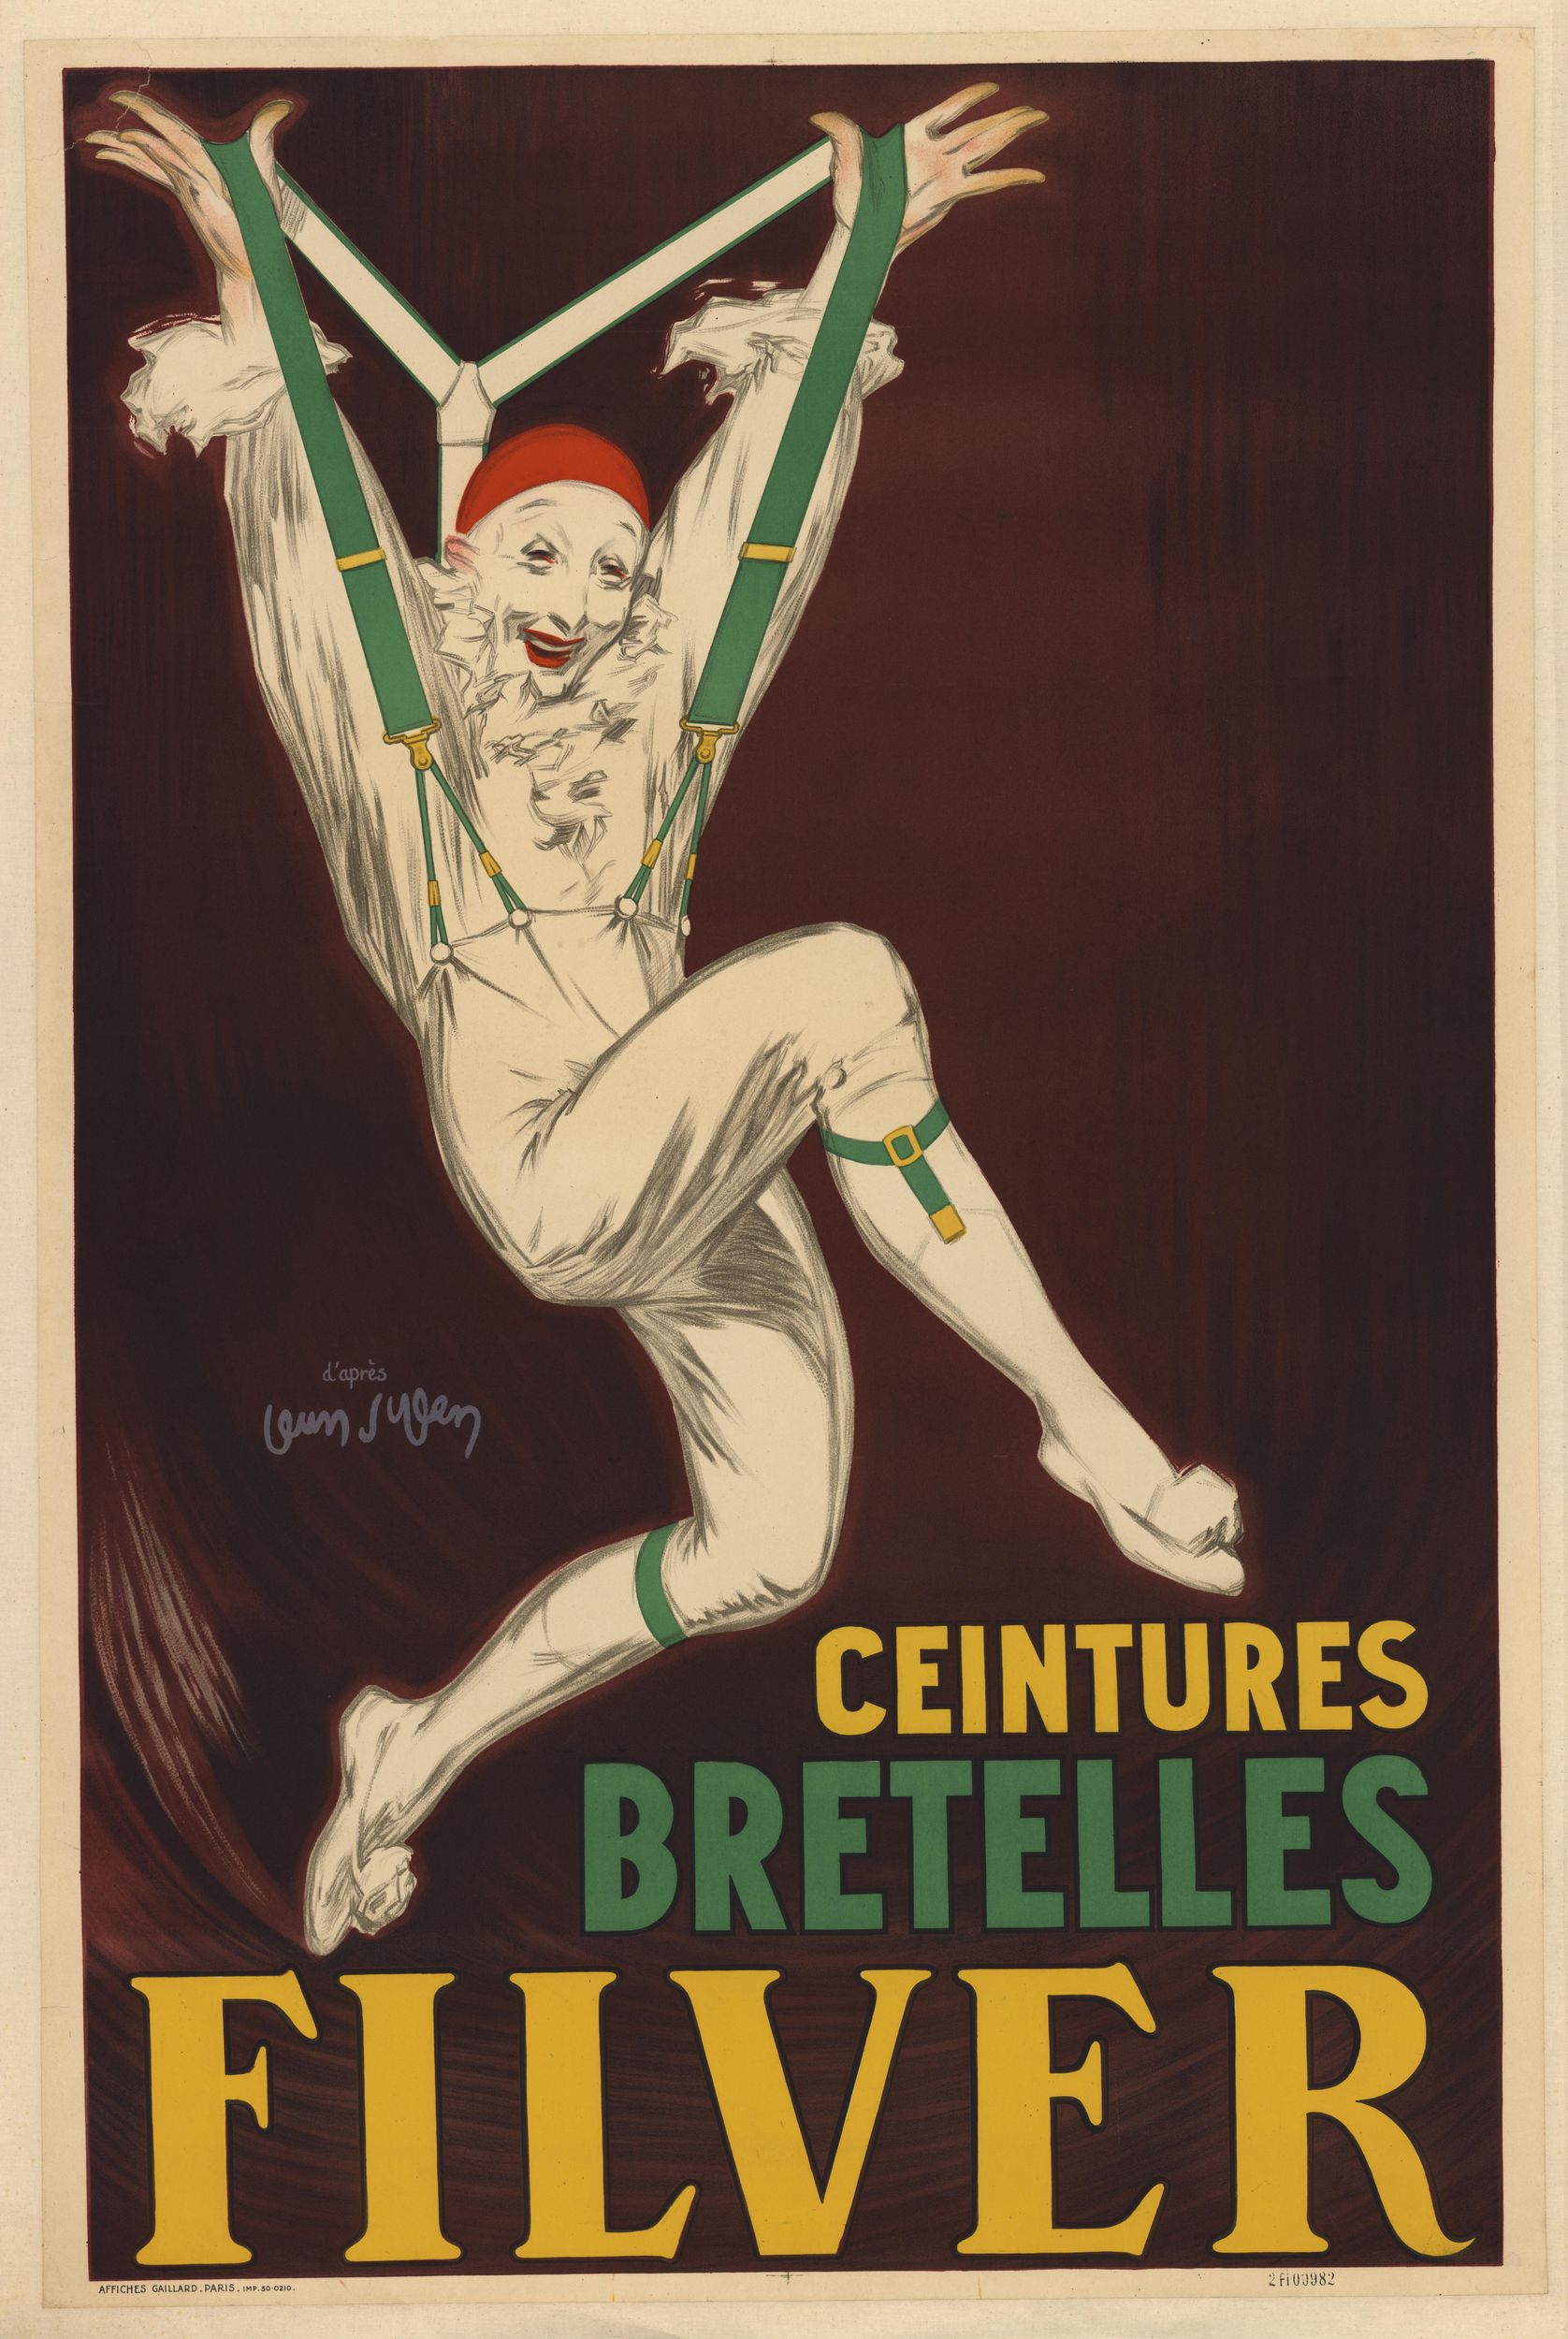 Ceintures, bretelles Filver : affiche publicitaire couleur (1900, cote : 2FI/982)